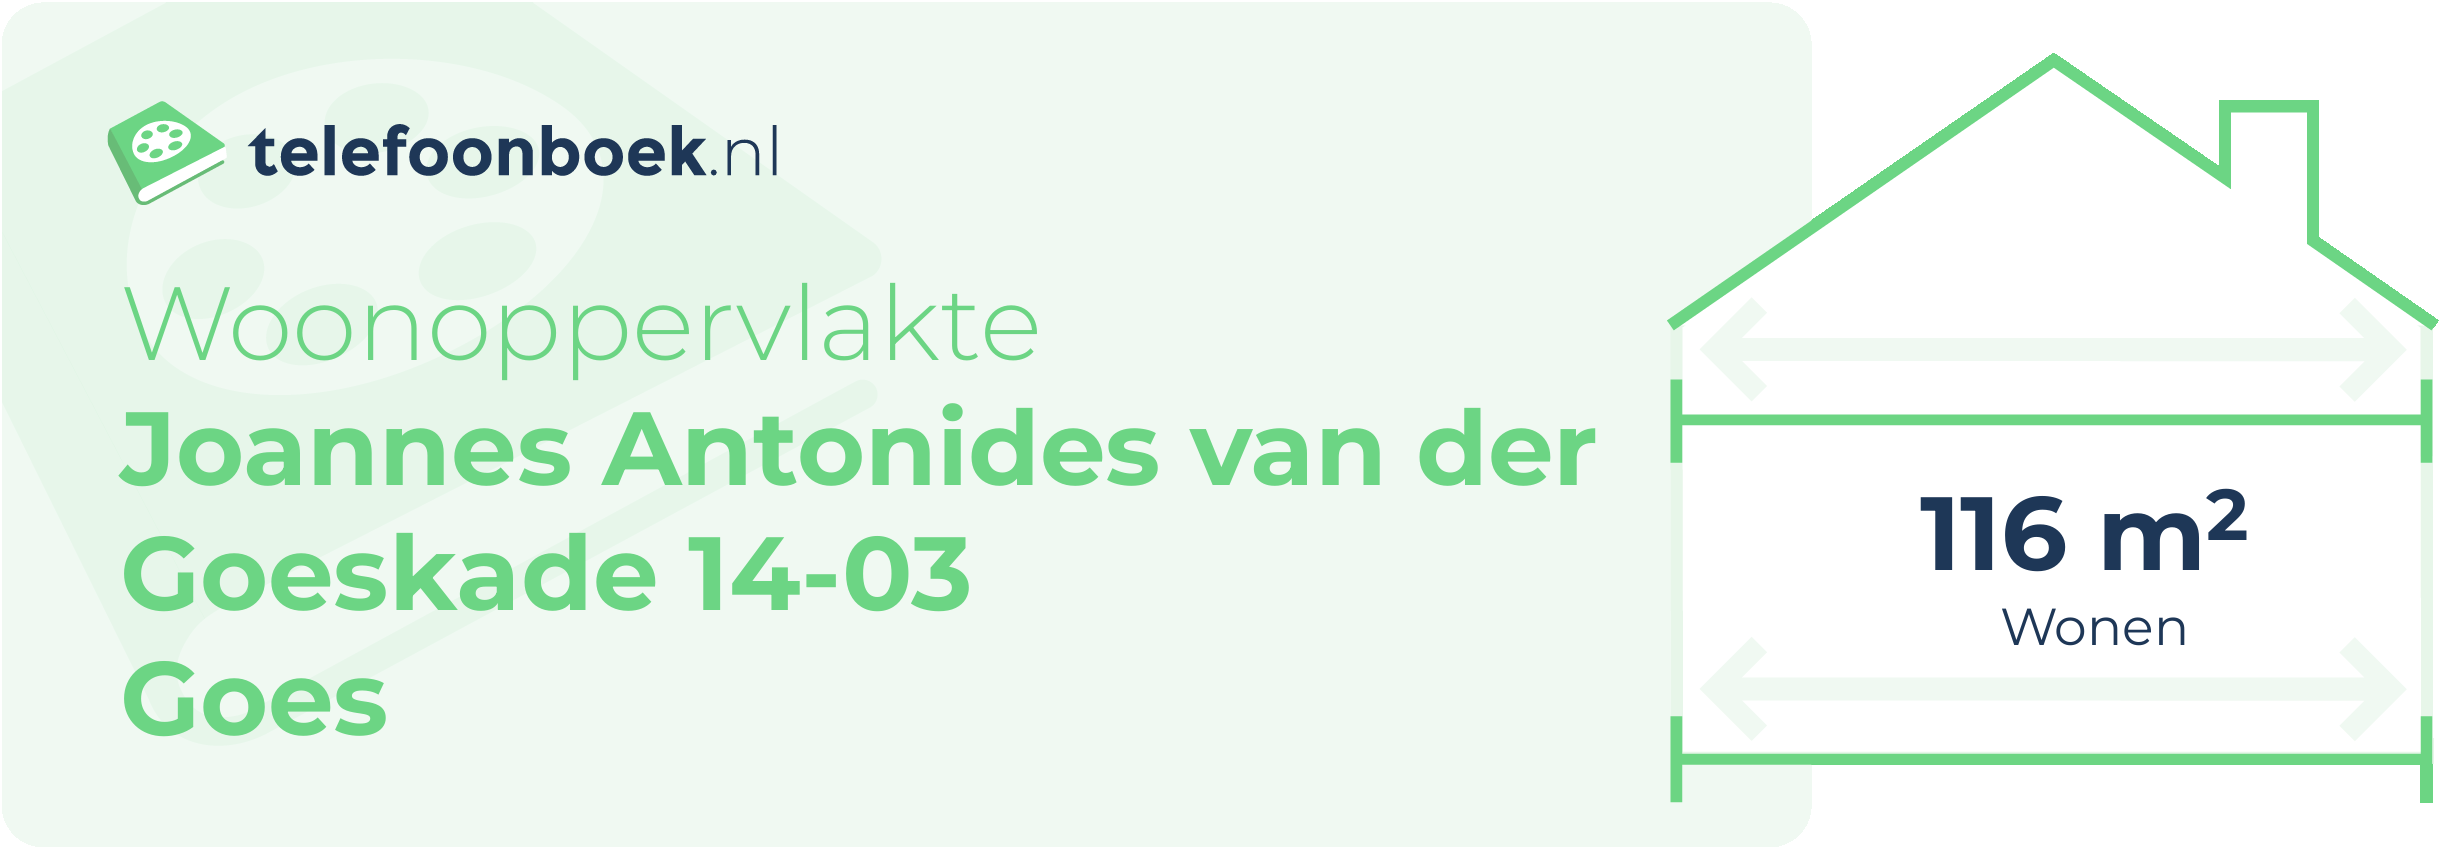 Woonoppervlakte Joannes Antonides Van Der Goeskade 14-03 Goes